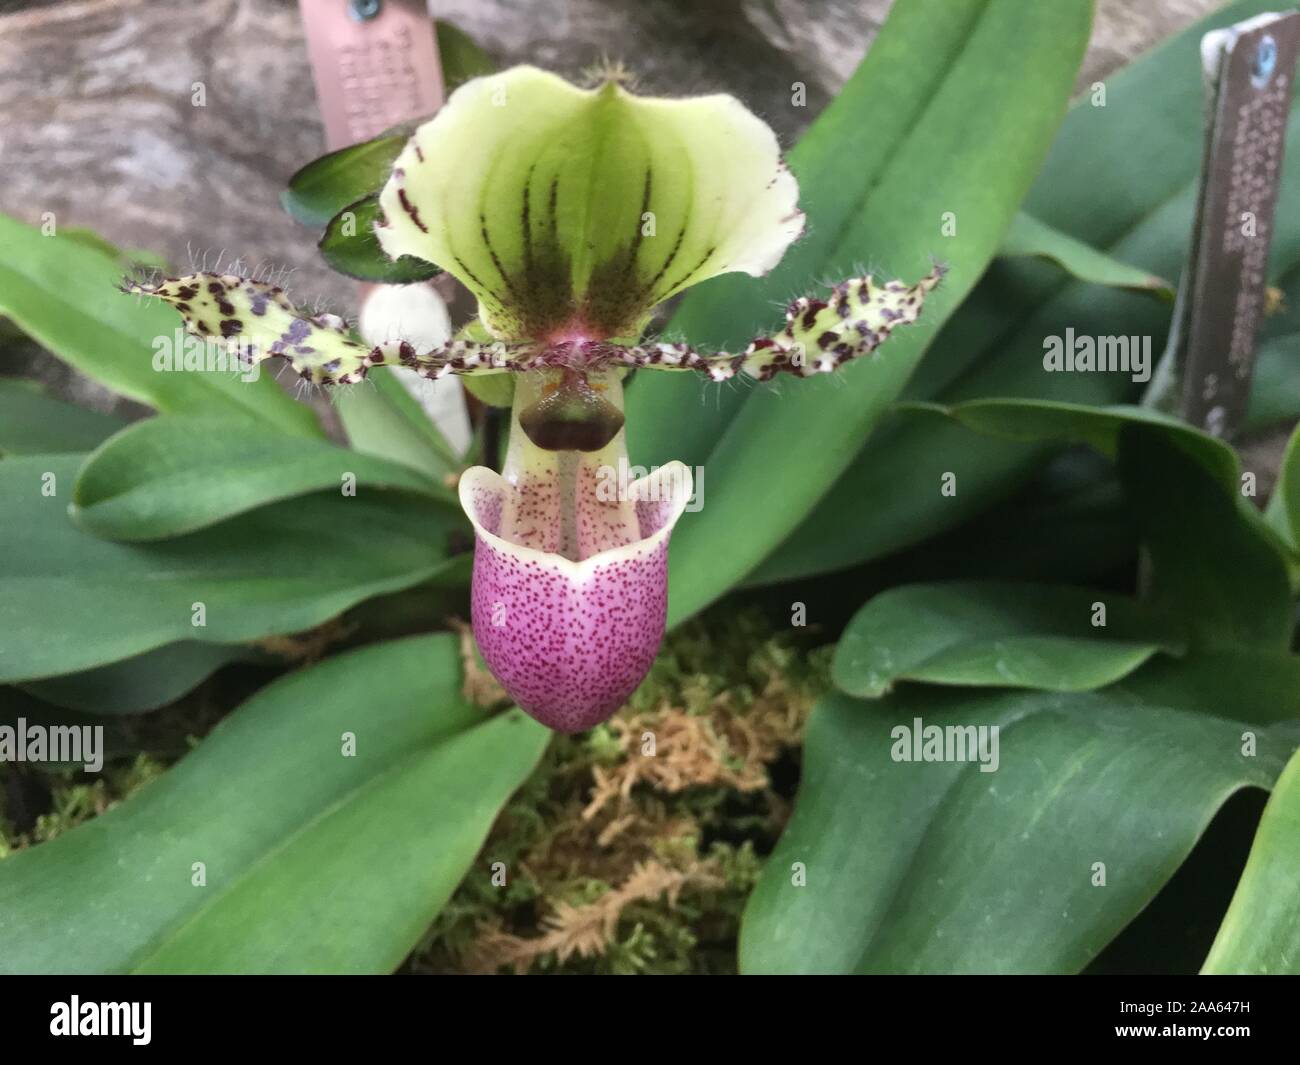 Paphiopedilum victoria regina orchid Stock Photo